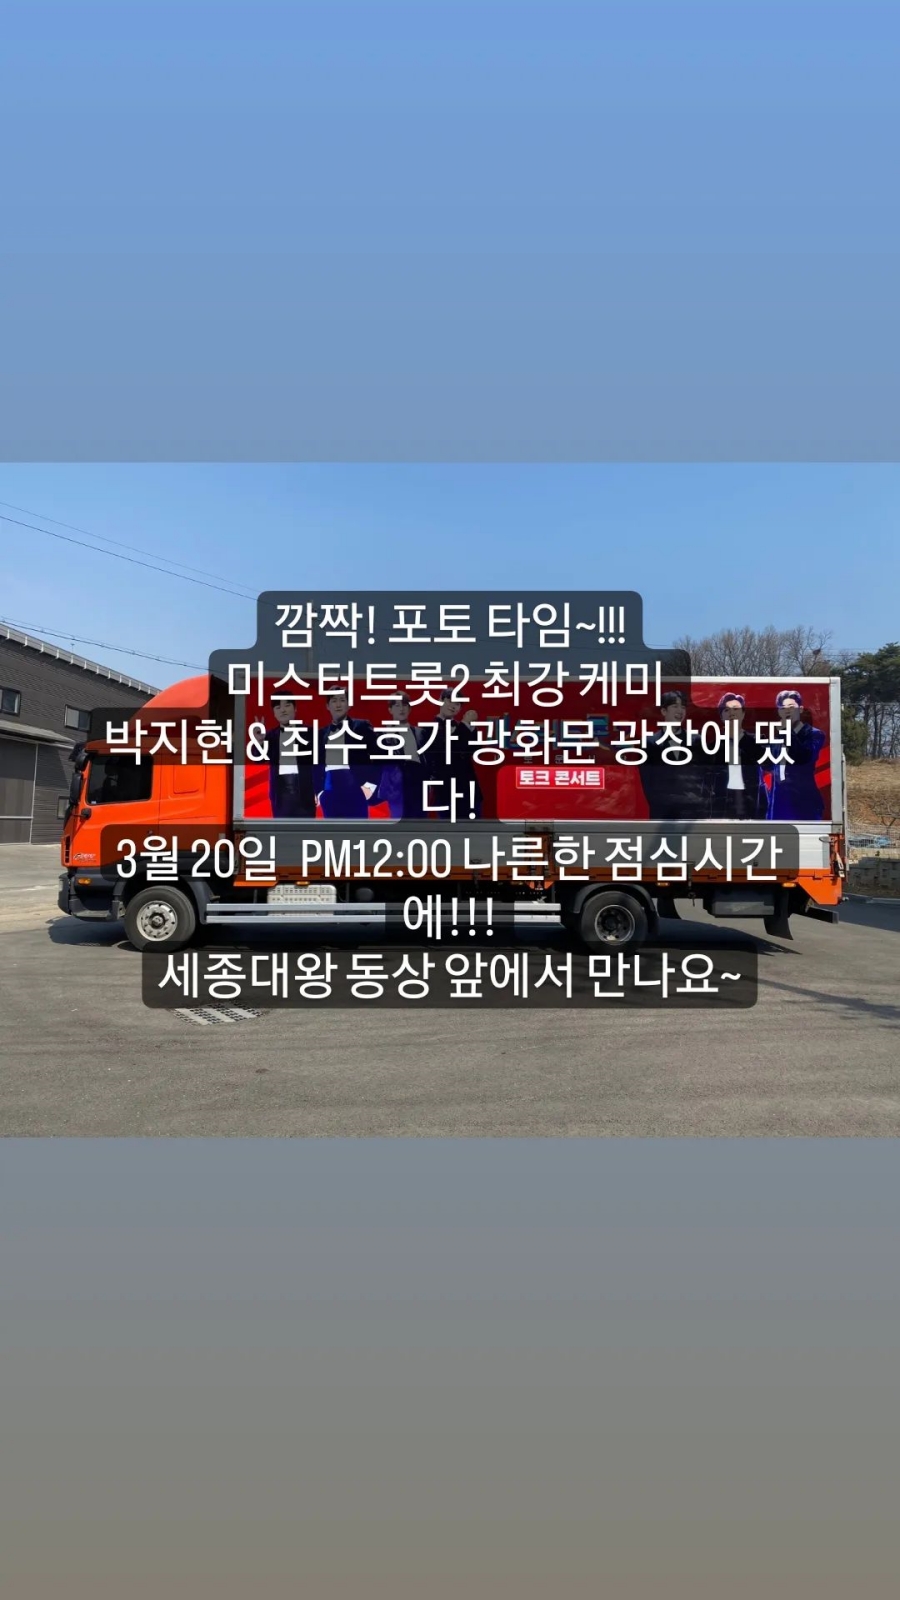 사진 : 박지현 인스타그램